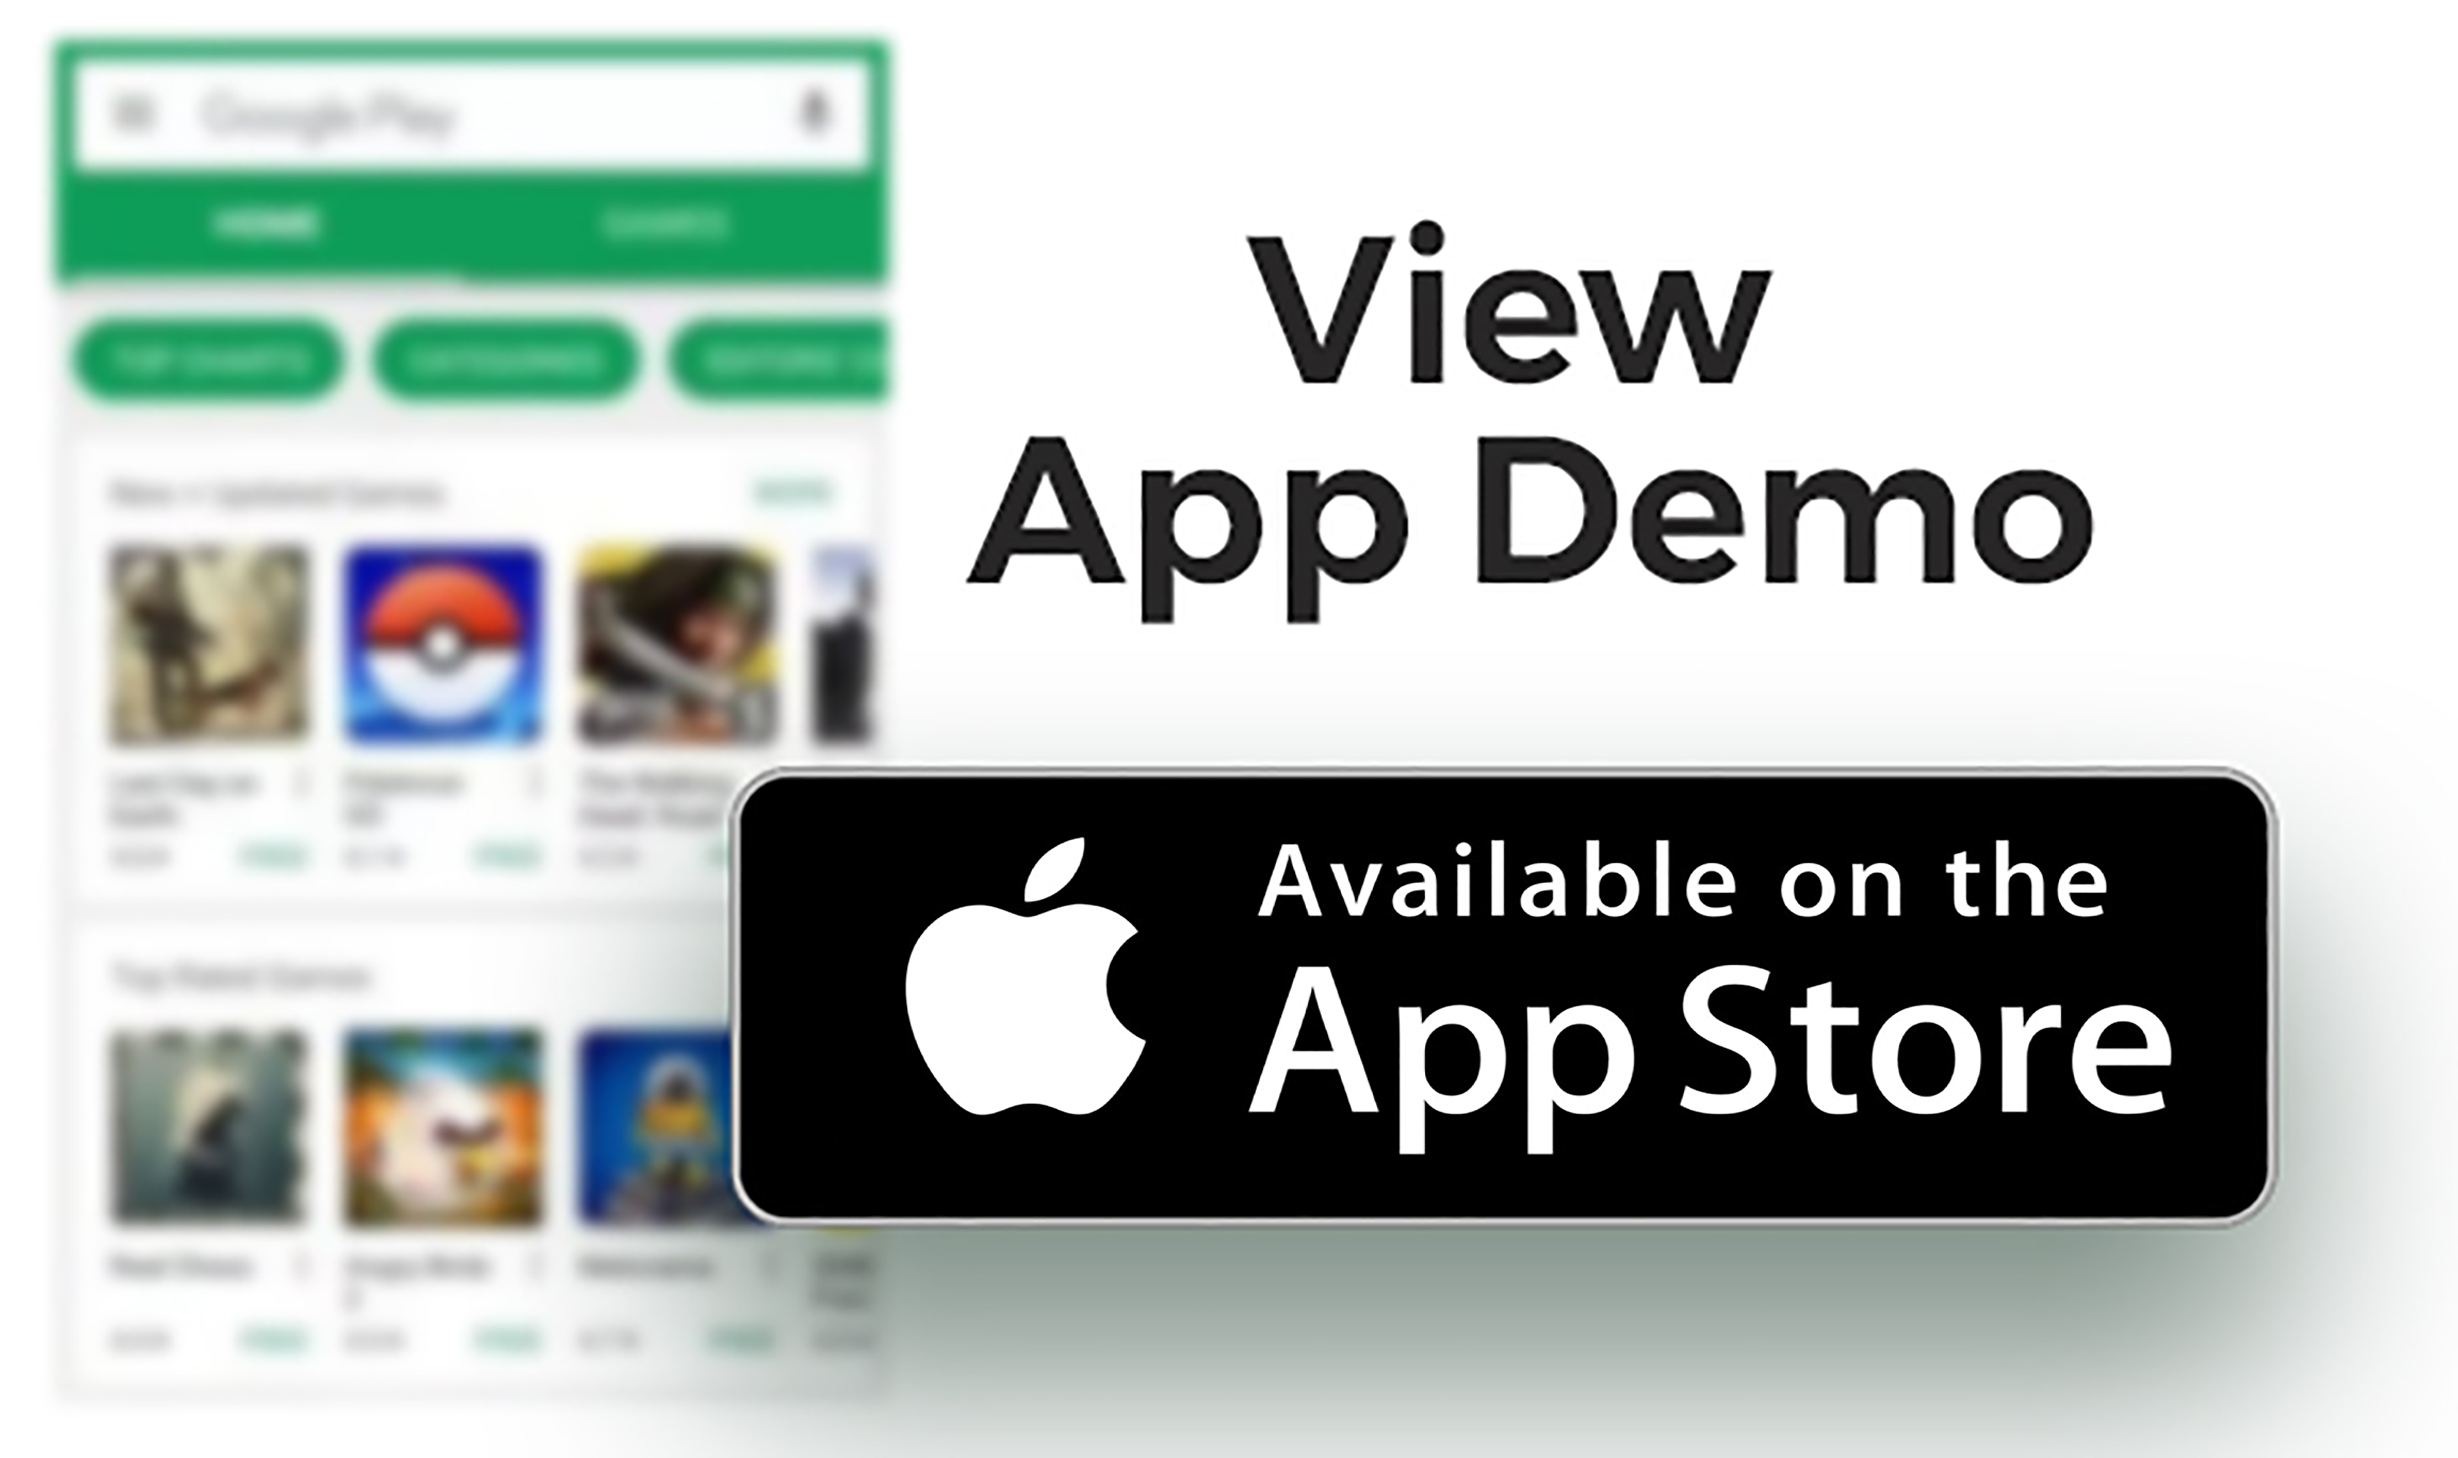 e-Nursery - iOS (iPhone) app for Nursery - 3